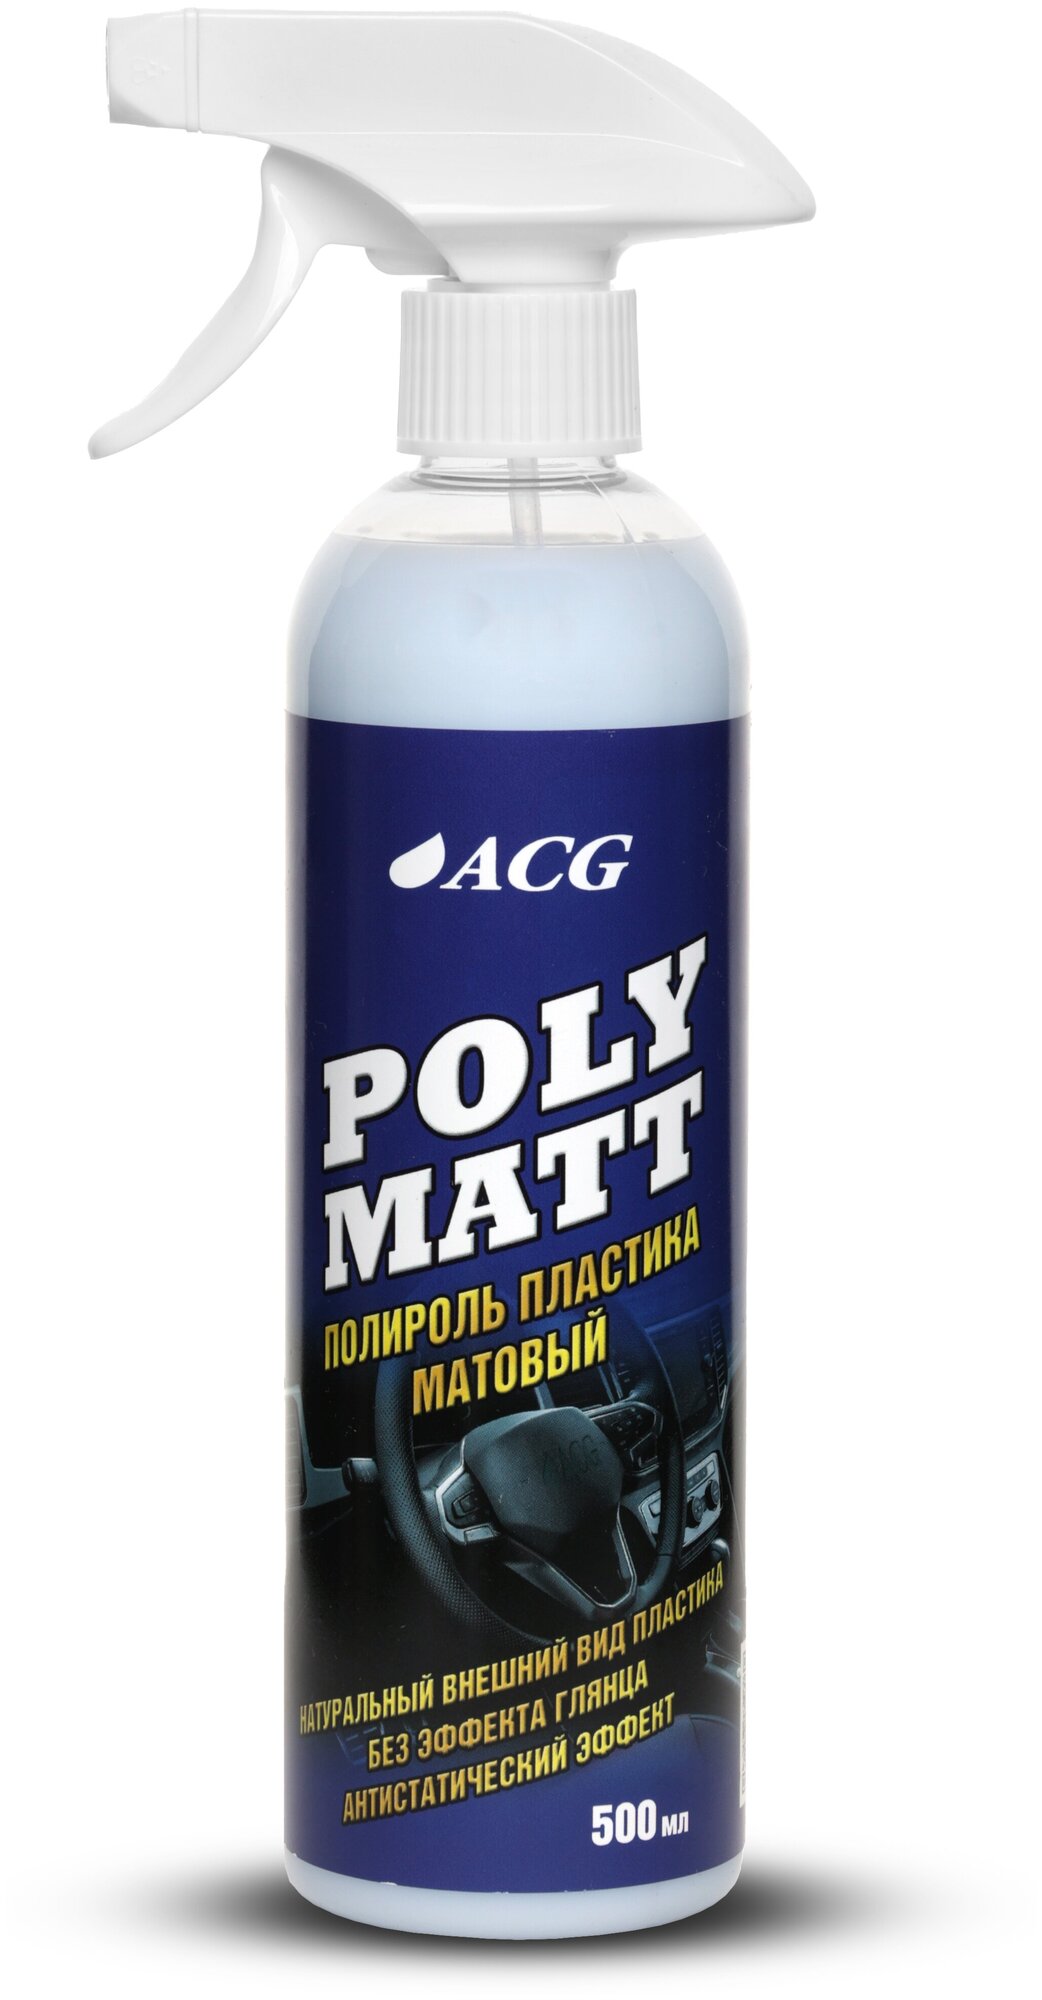 Полироль пластика матовый Polymatt 500 мл ACG